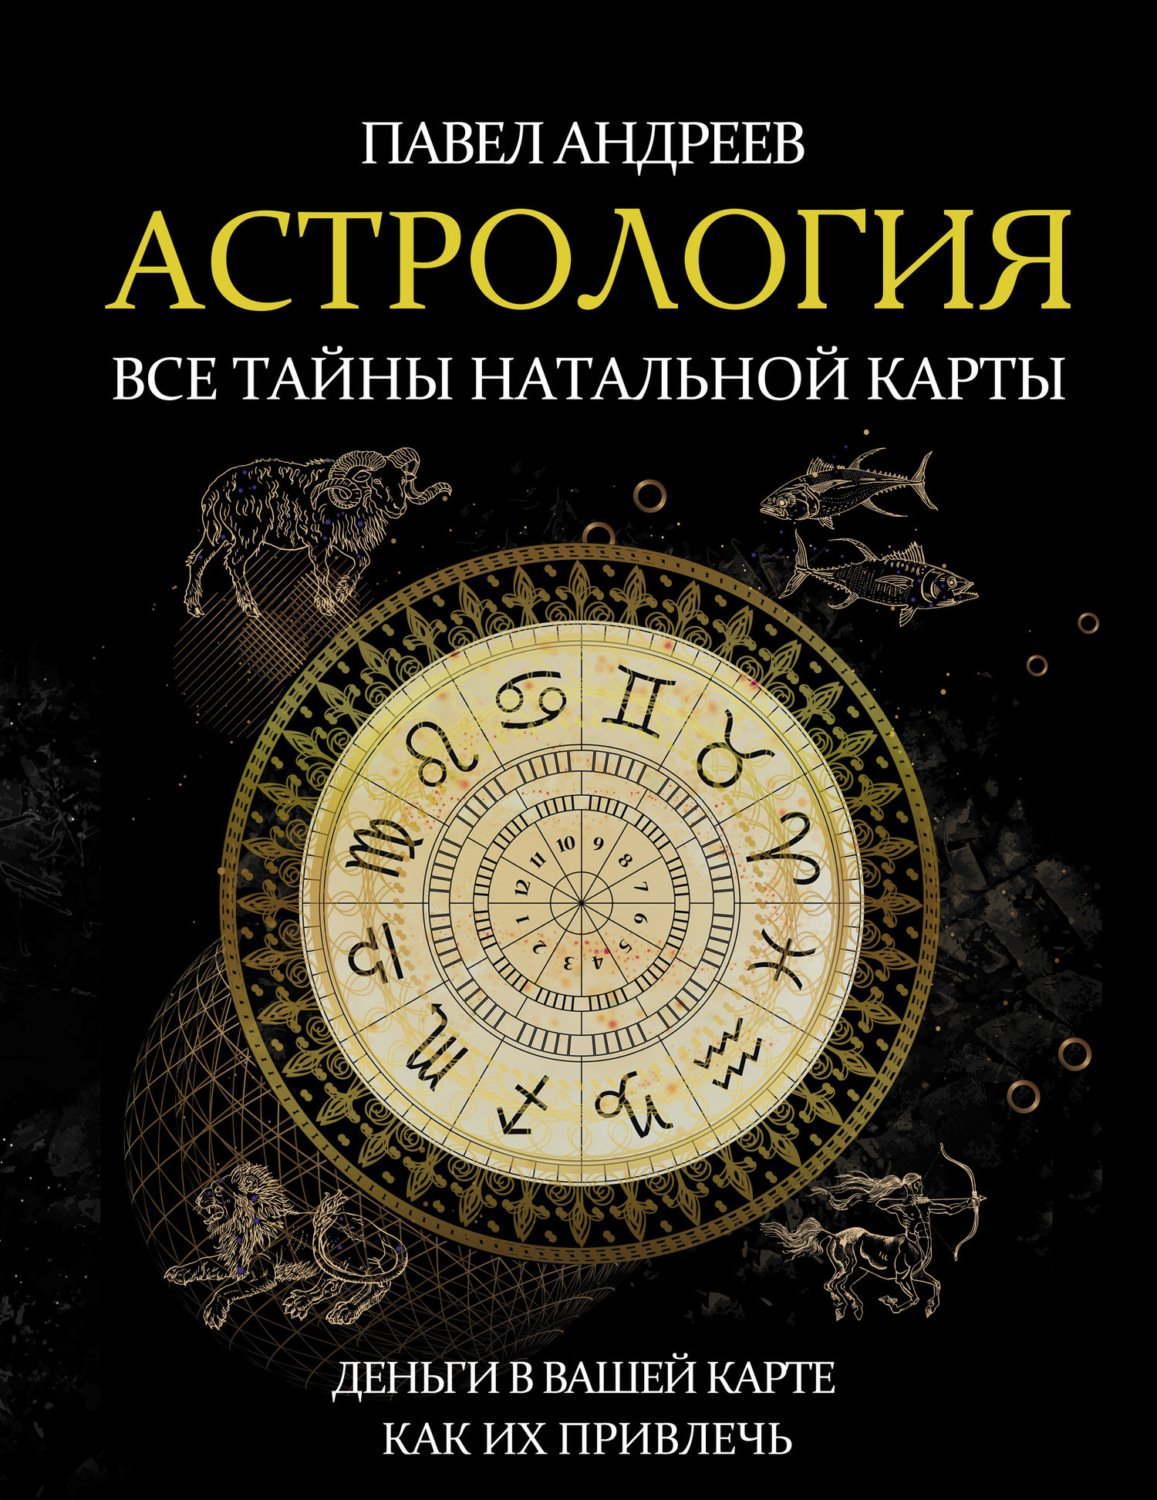 Отзывы о книге «Астрология. Все тайны натальной карты», рецензии на книгуПавла Андреева, рейтинг в библиотеке Литрес